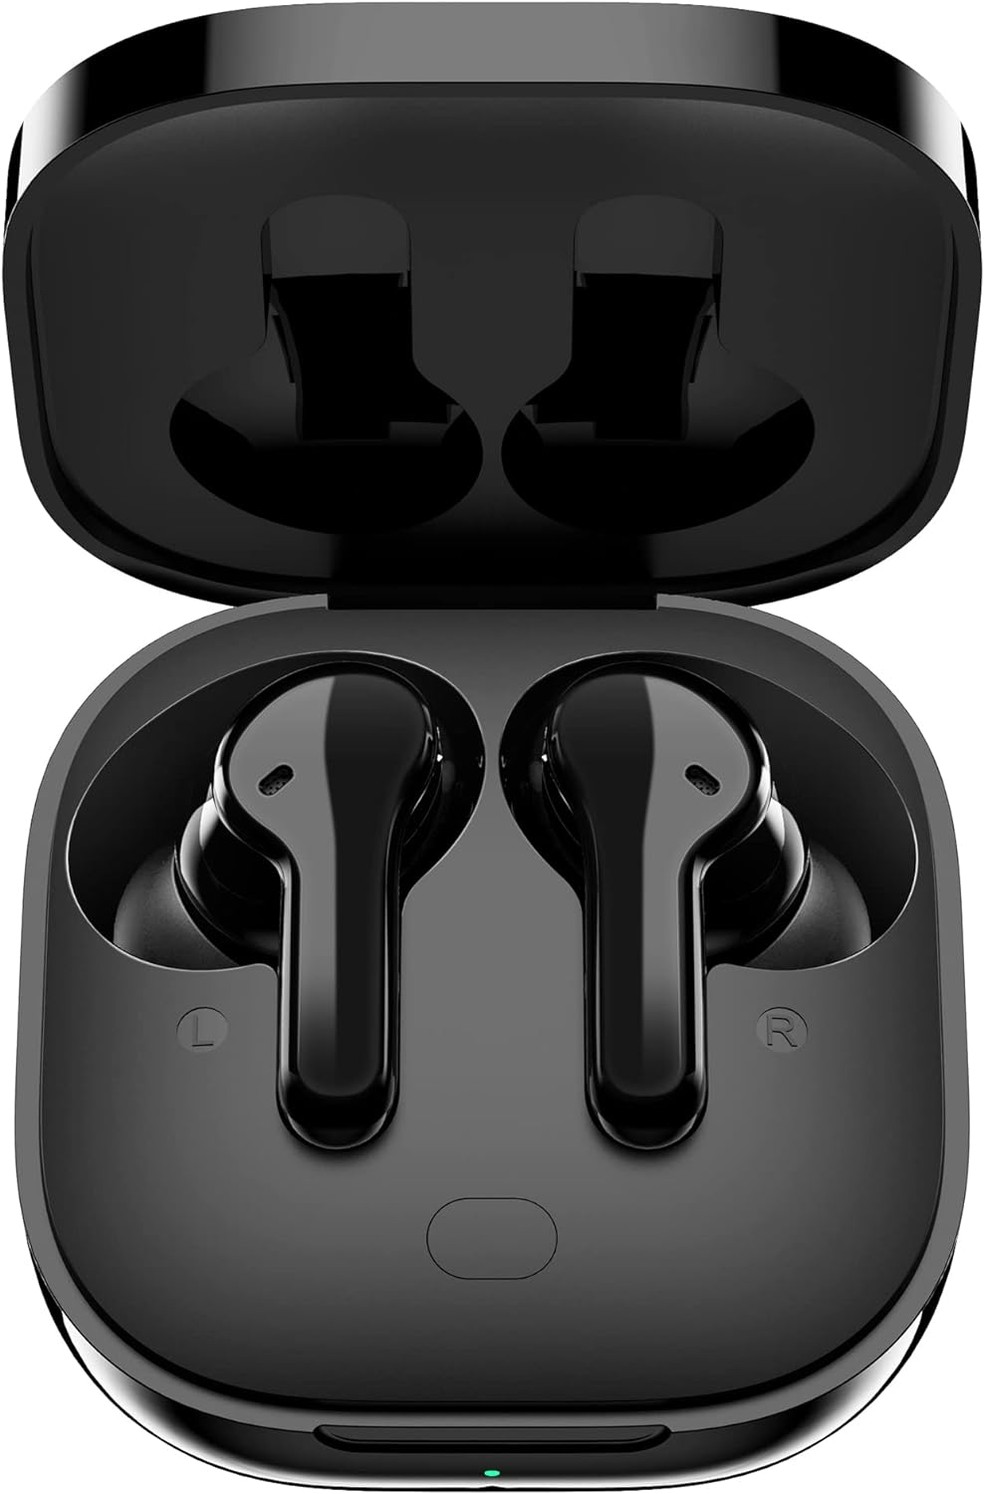 Fone de ouvido Bluetooth bom e barato: 6 opções com bom custo-benefício